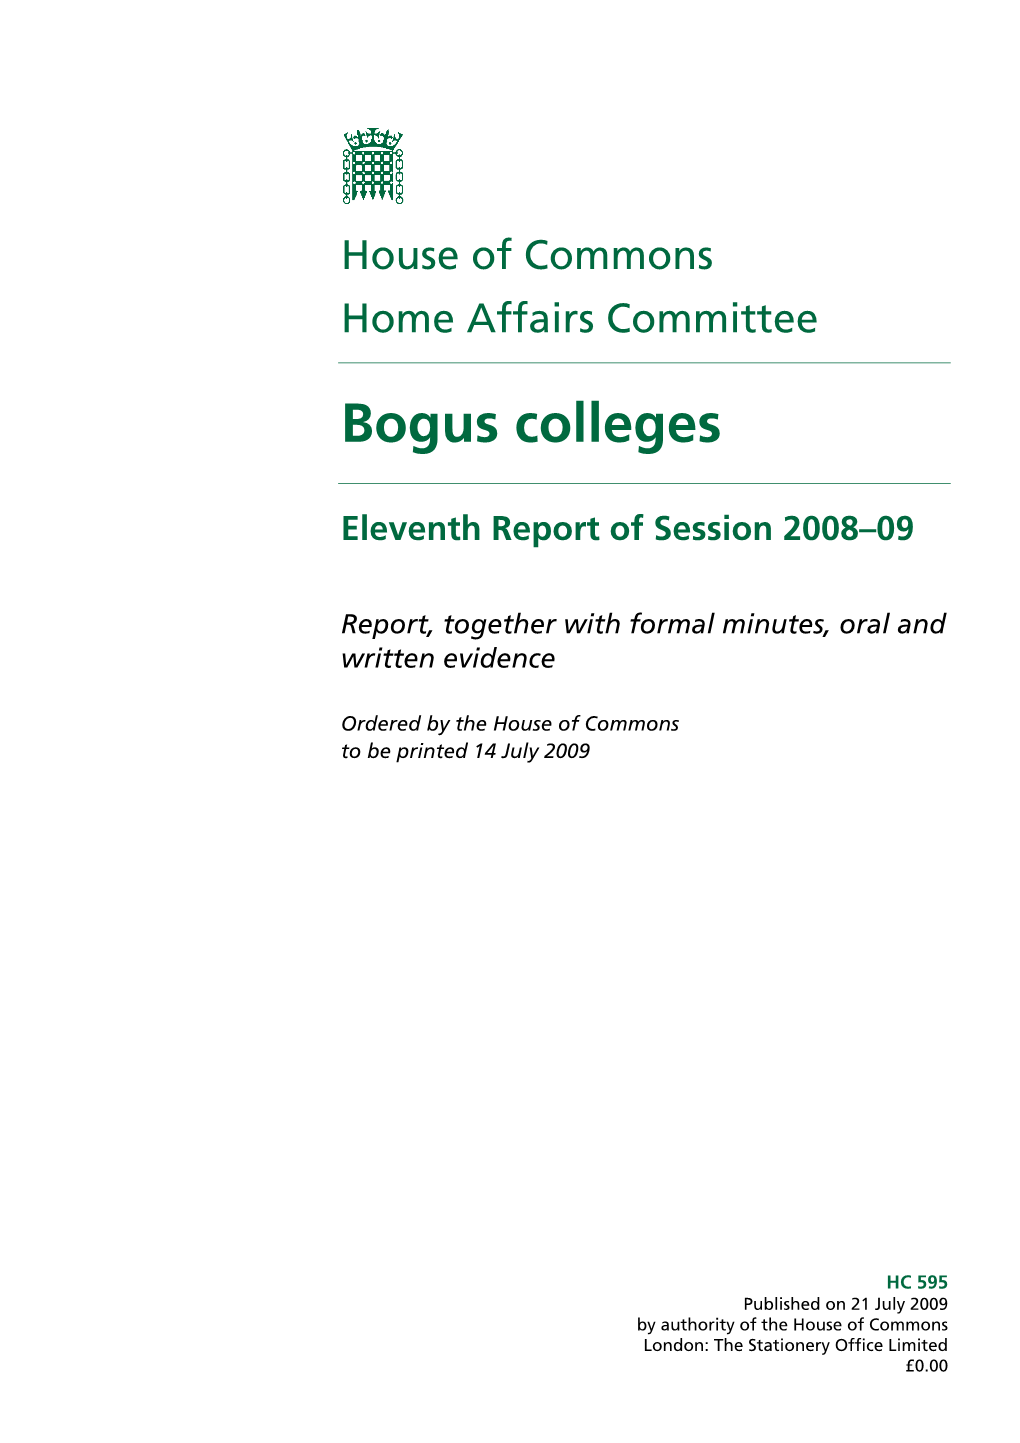 Bogus Colleges